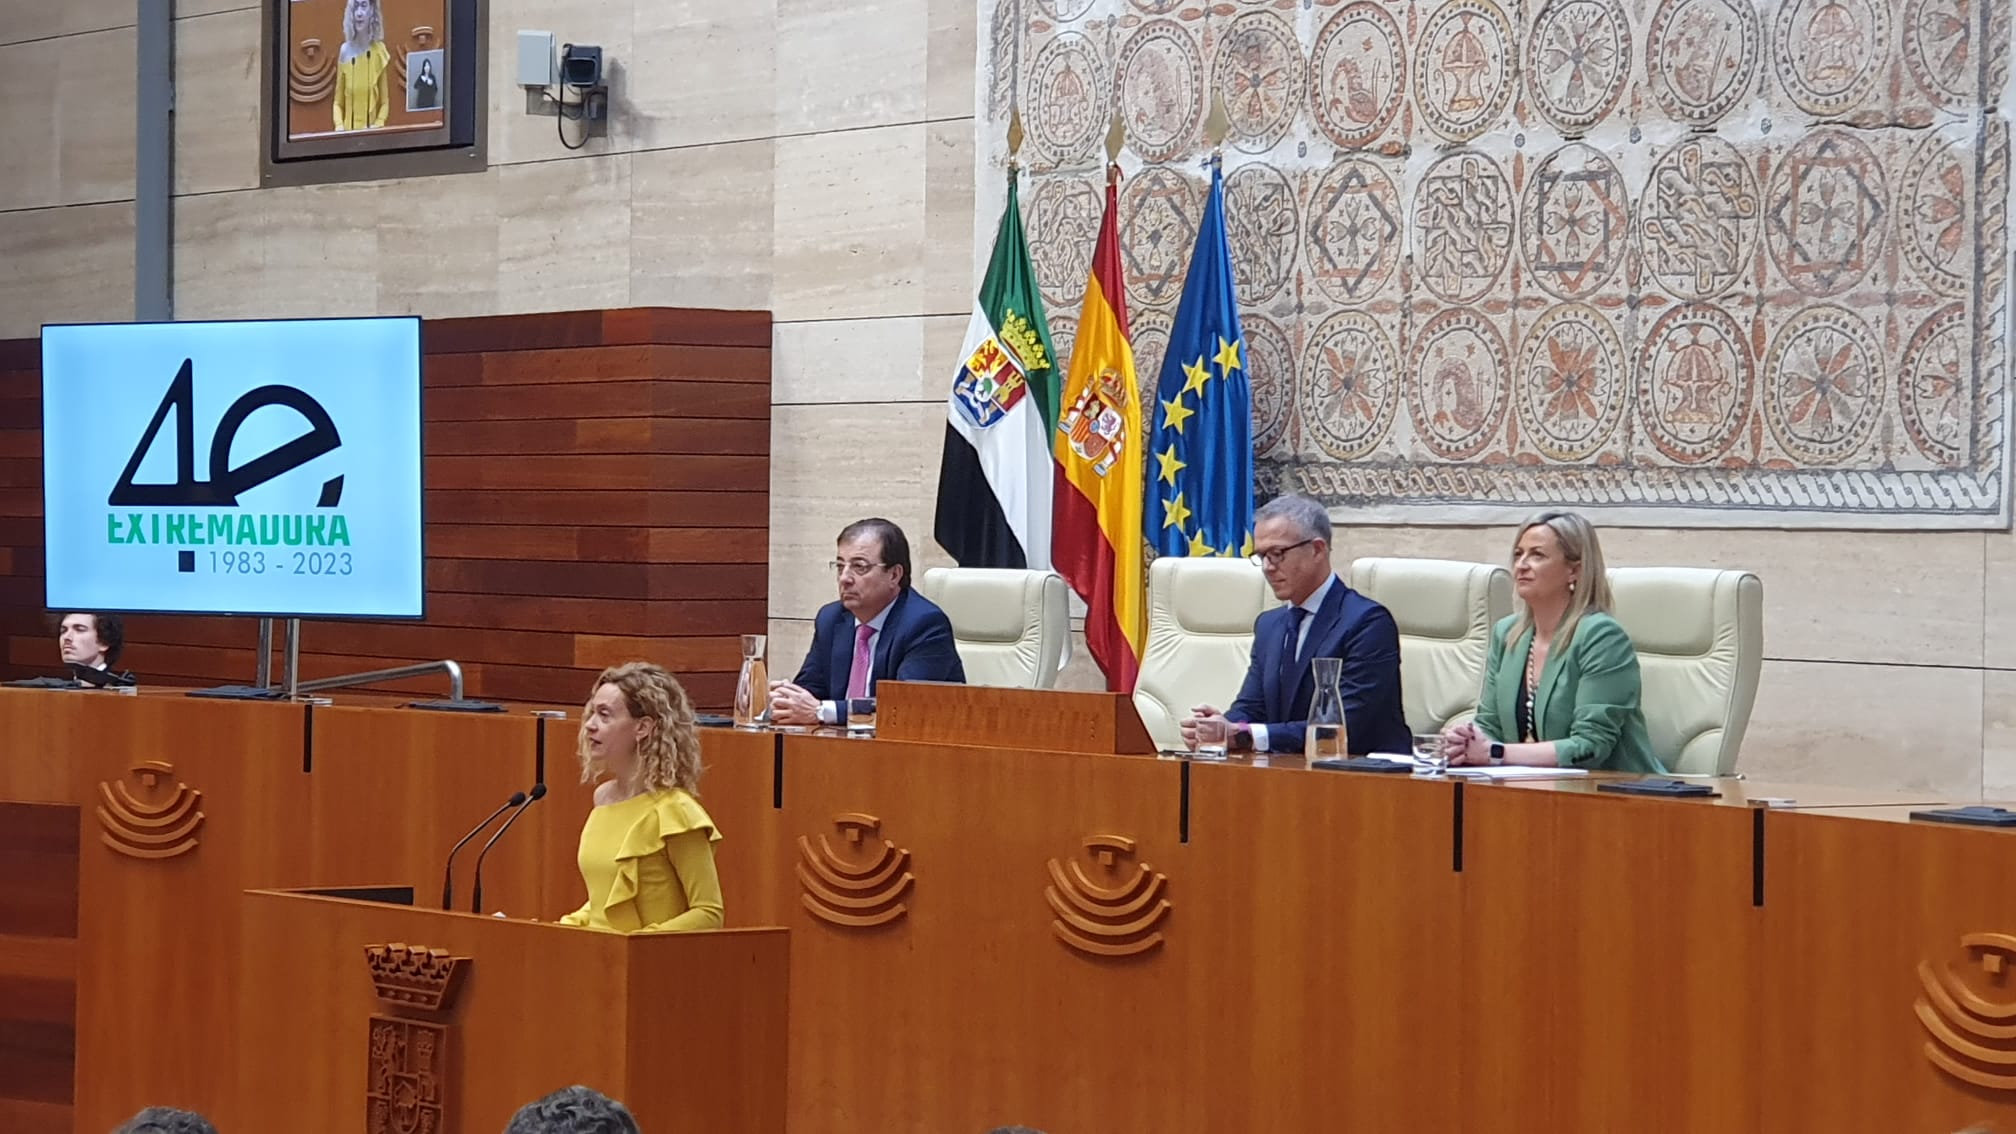 La presidenta del Congreso de los Diputados, Meritxell Batet, interviene en el acto del 40 aniversario del Estatuto de Autonomía de Extremadura, en la Asamblea de Extremadura.